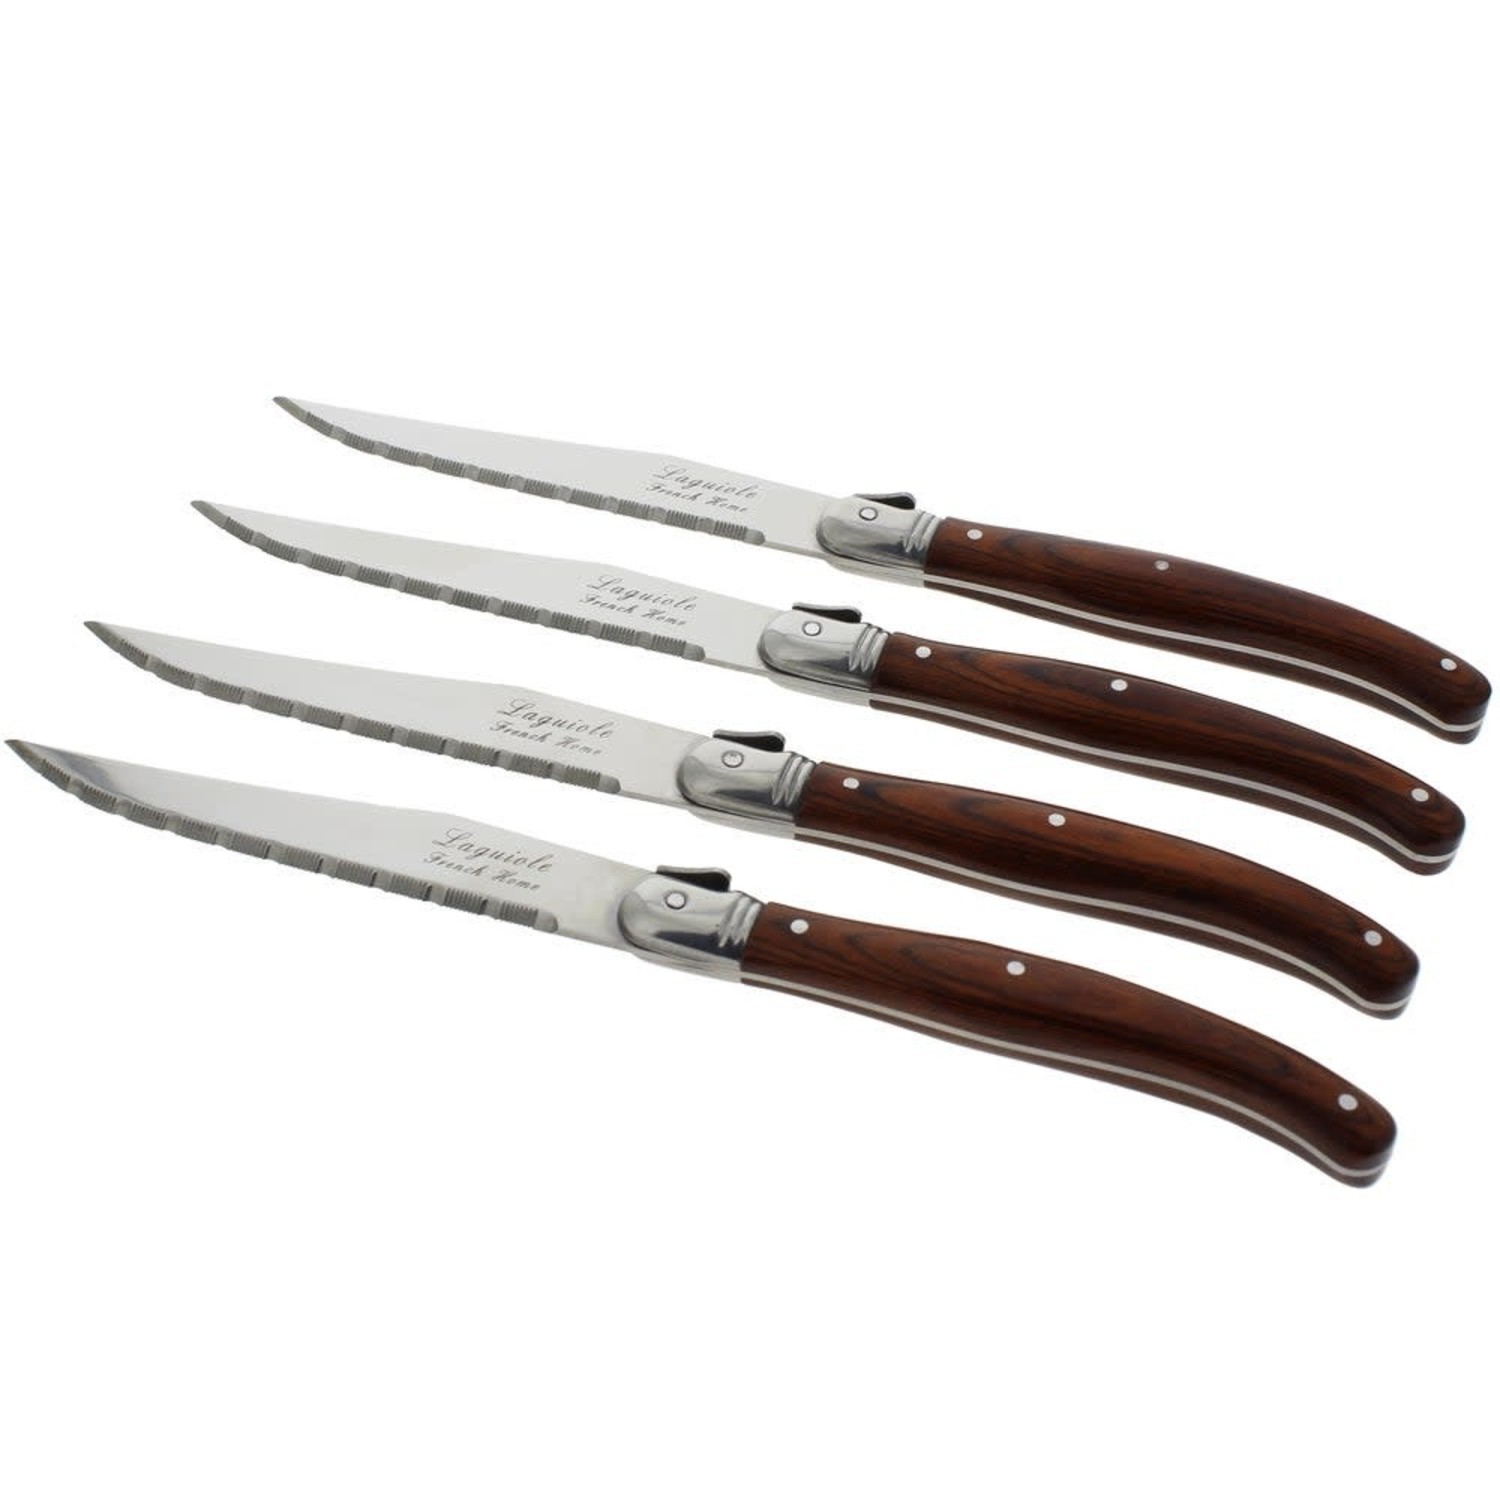 https://cdn.shoplightspeed.com/shops/633447/files/25501569/1500x4000x3/rosewood-laguiole-steak-knives-set-of-4.jpg